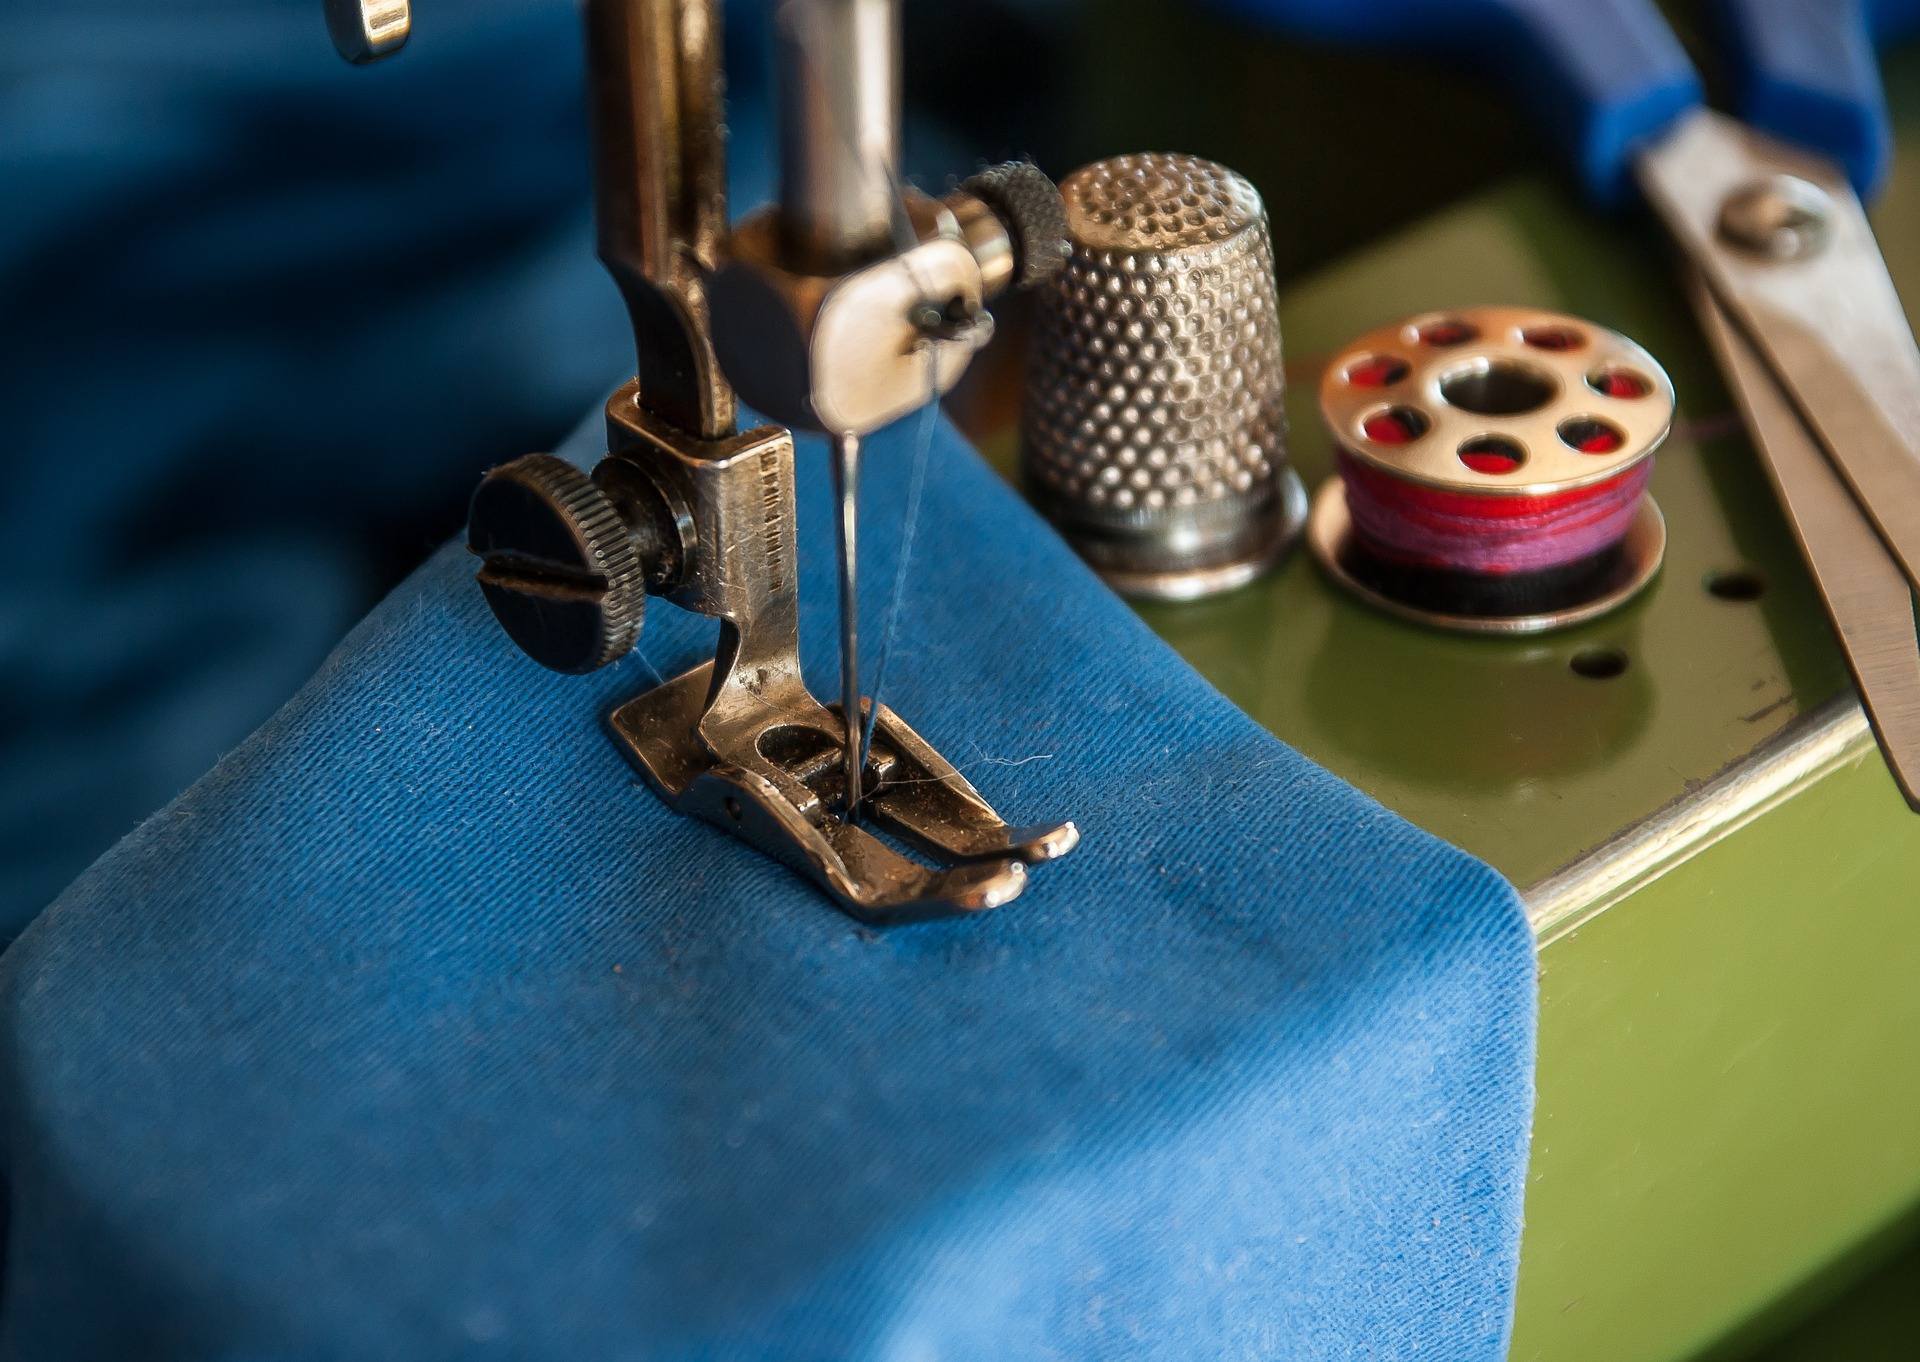 Solución de problemas frecuentes con las máquinas de coser. Parte I